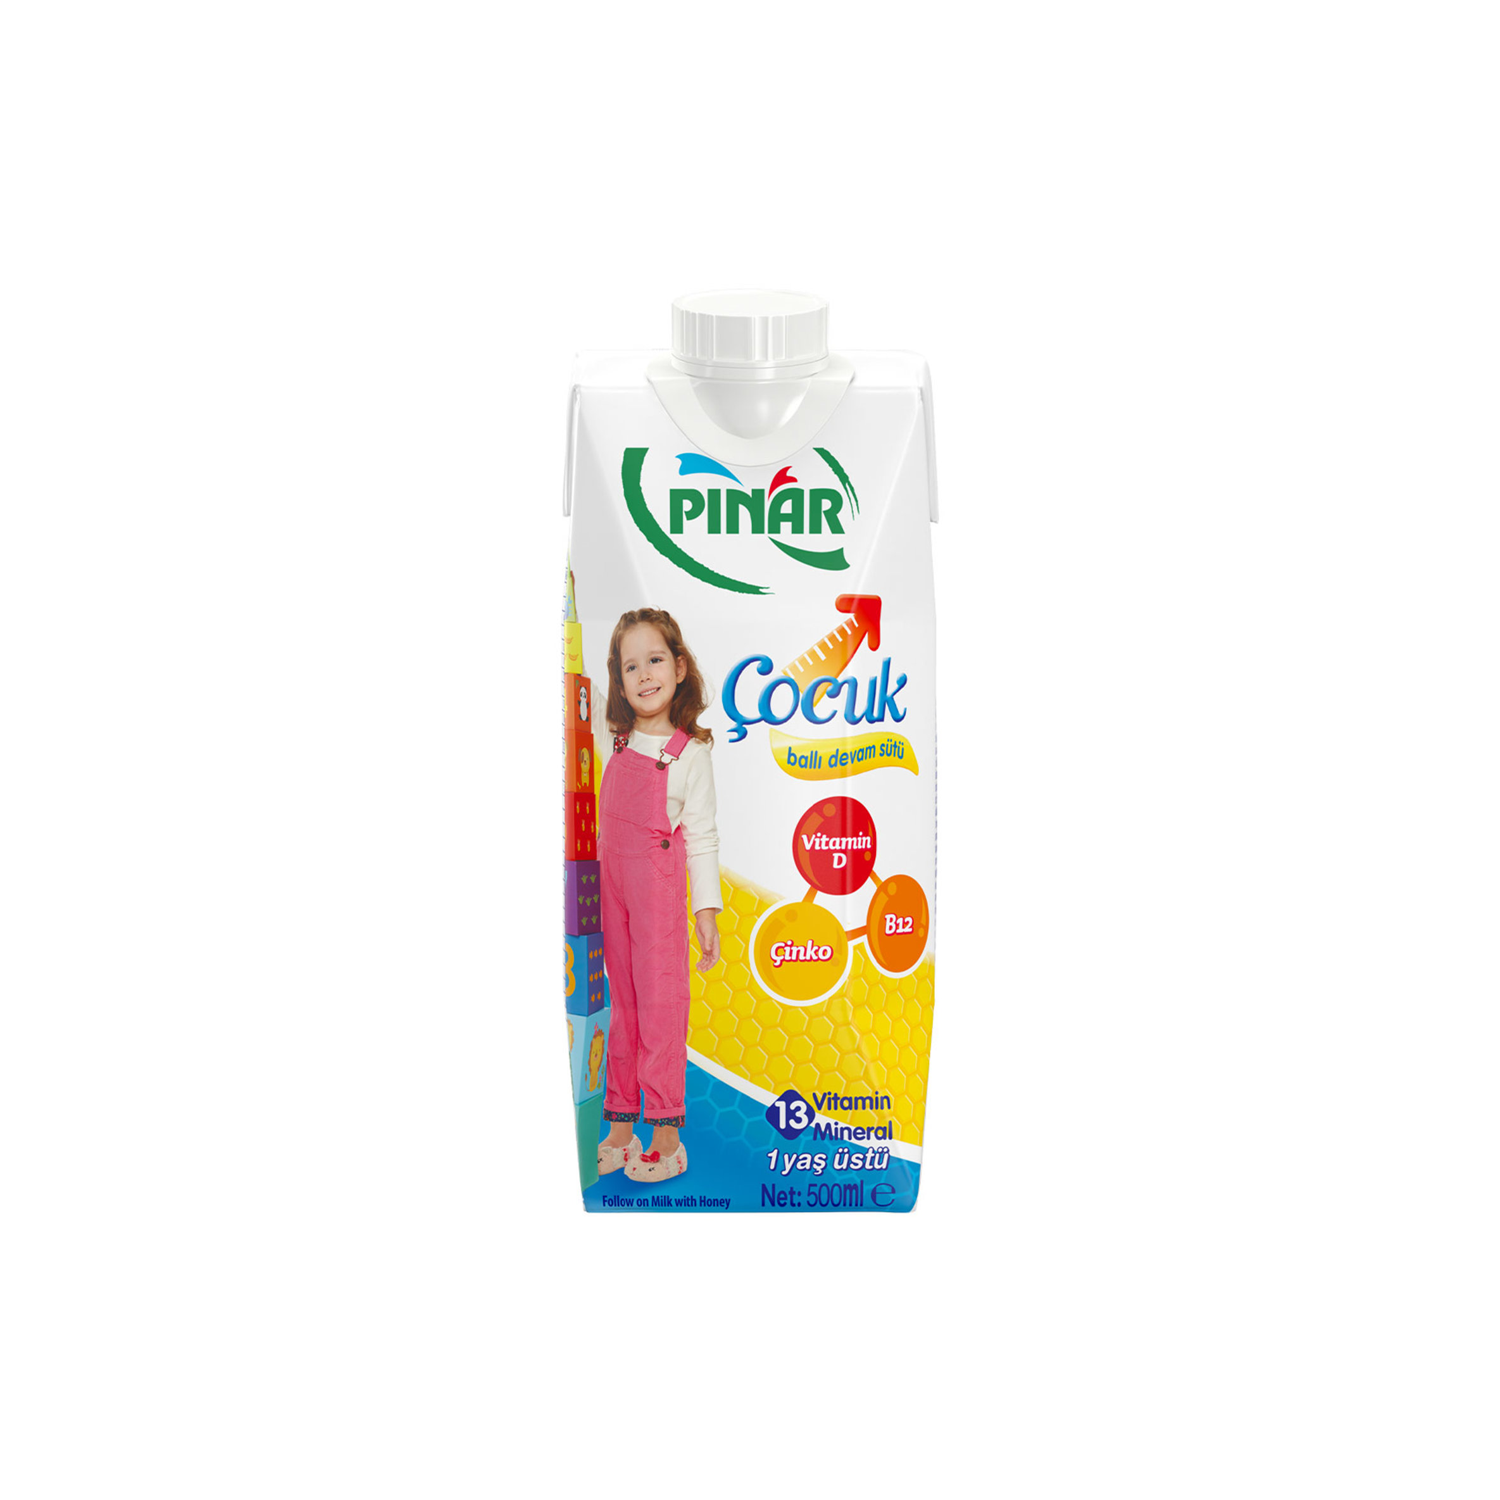 Pınar Çocuk Ballı Devam Sütü 500ML